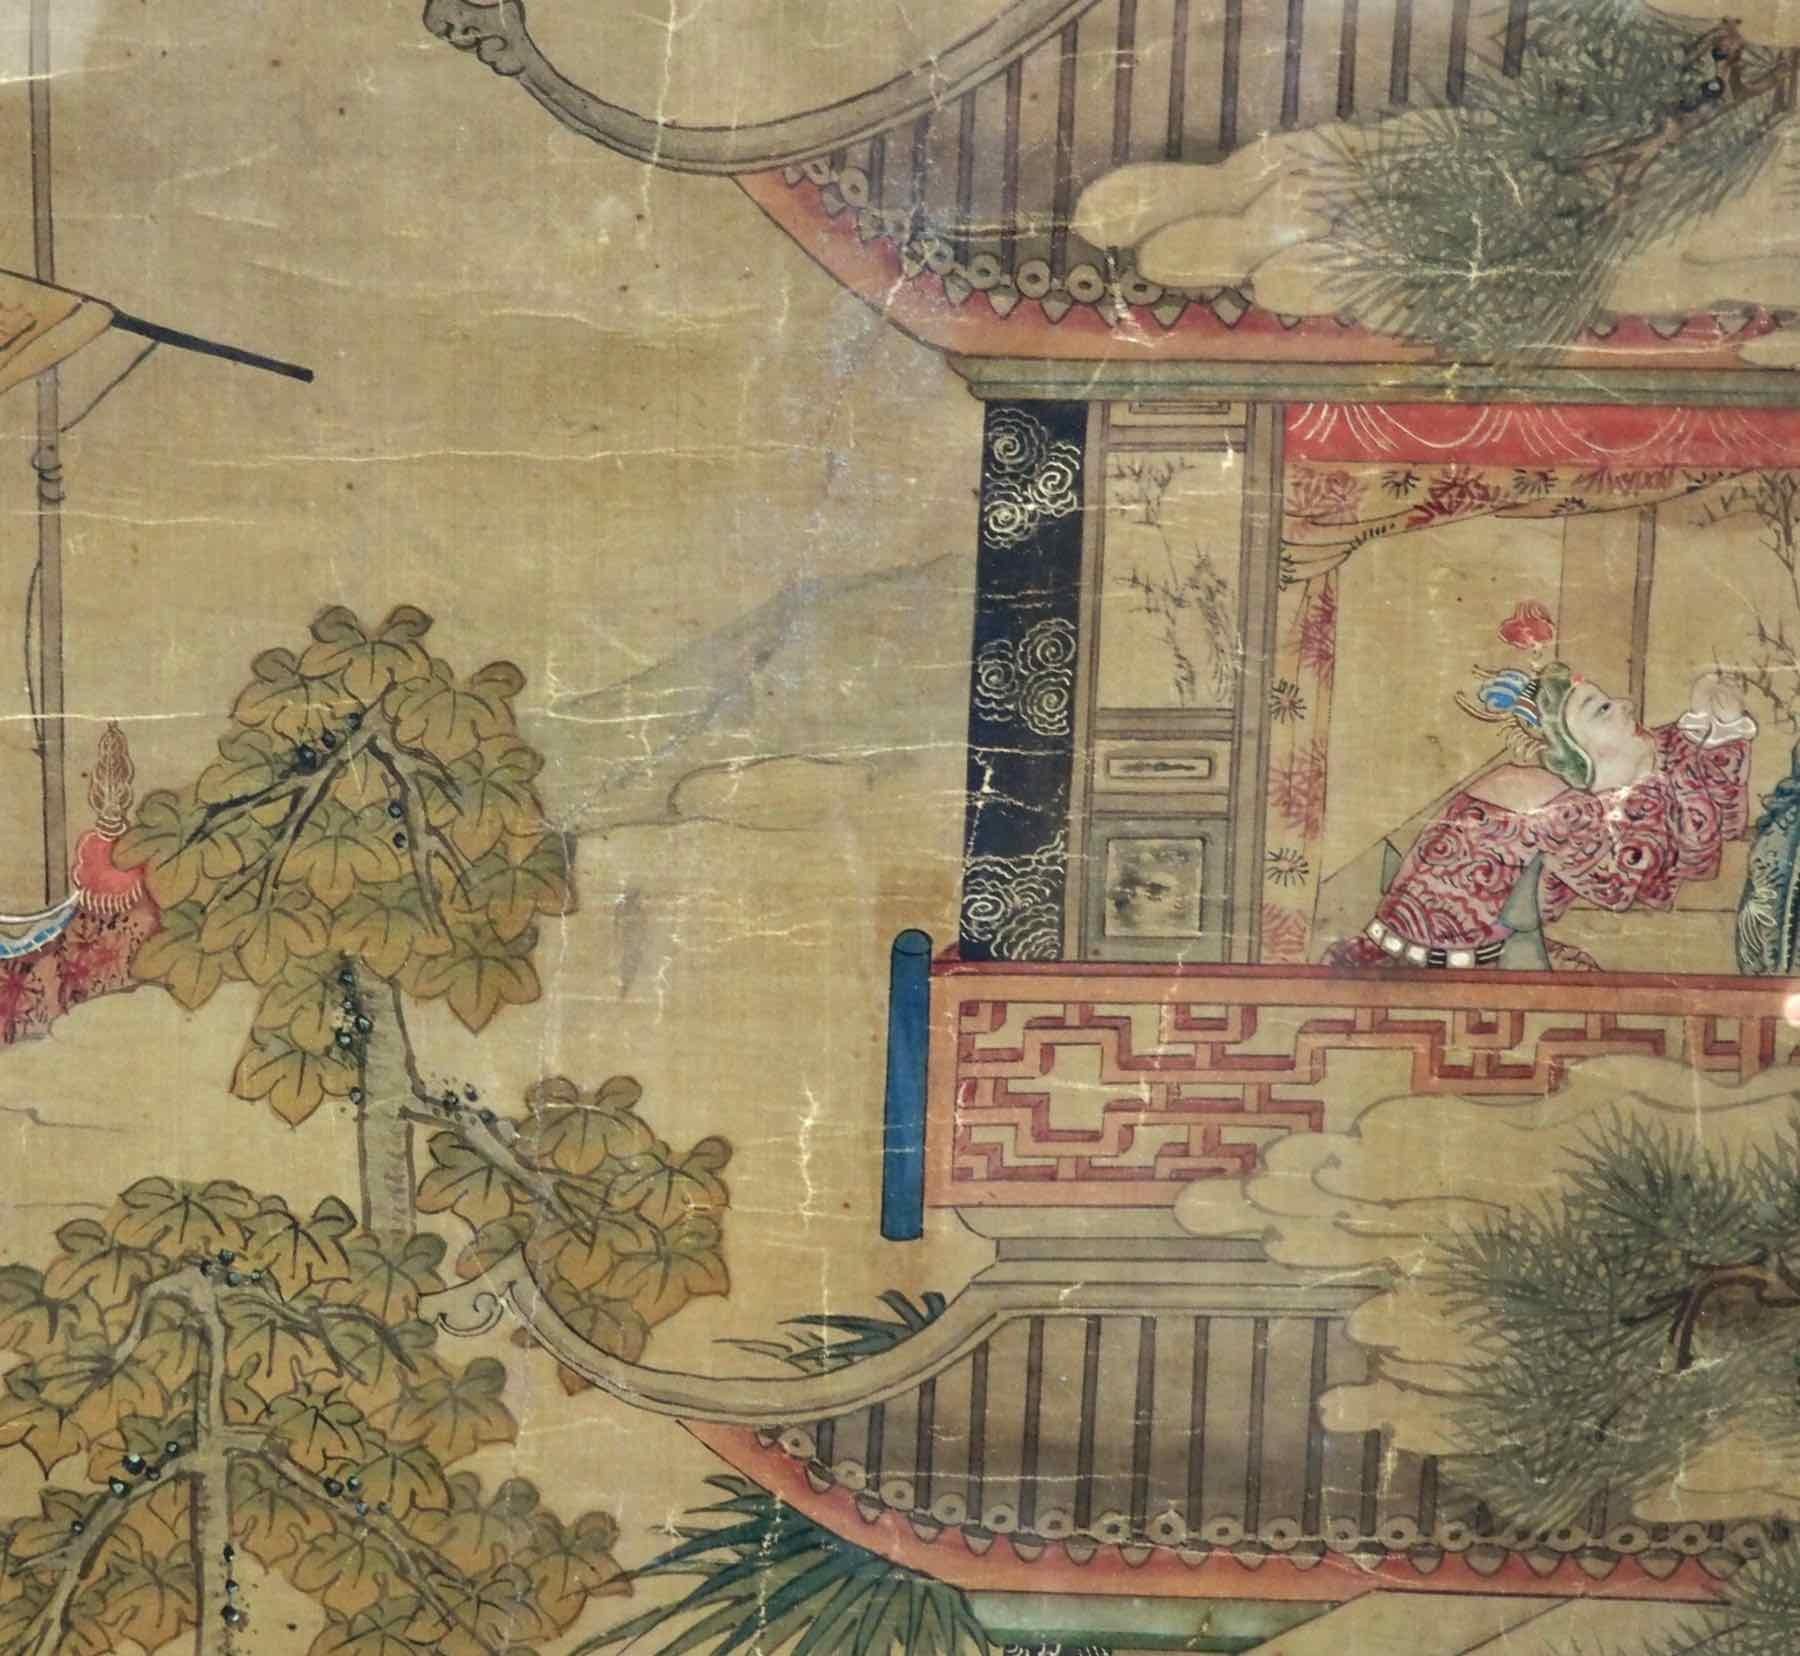 Belle peinture chinoise, 18ème siècle.
Mesures : H. 32, L. 45 cm
H. 12.5, W. 17.7 in.